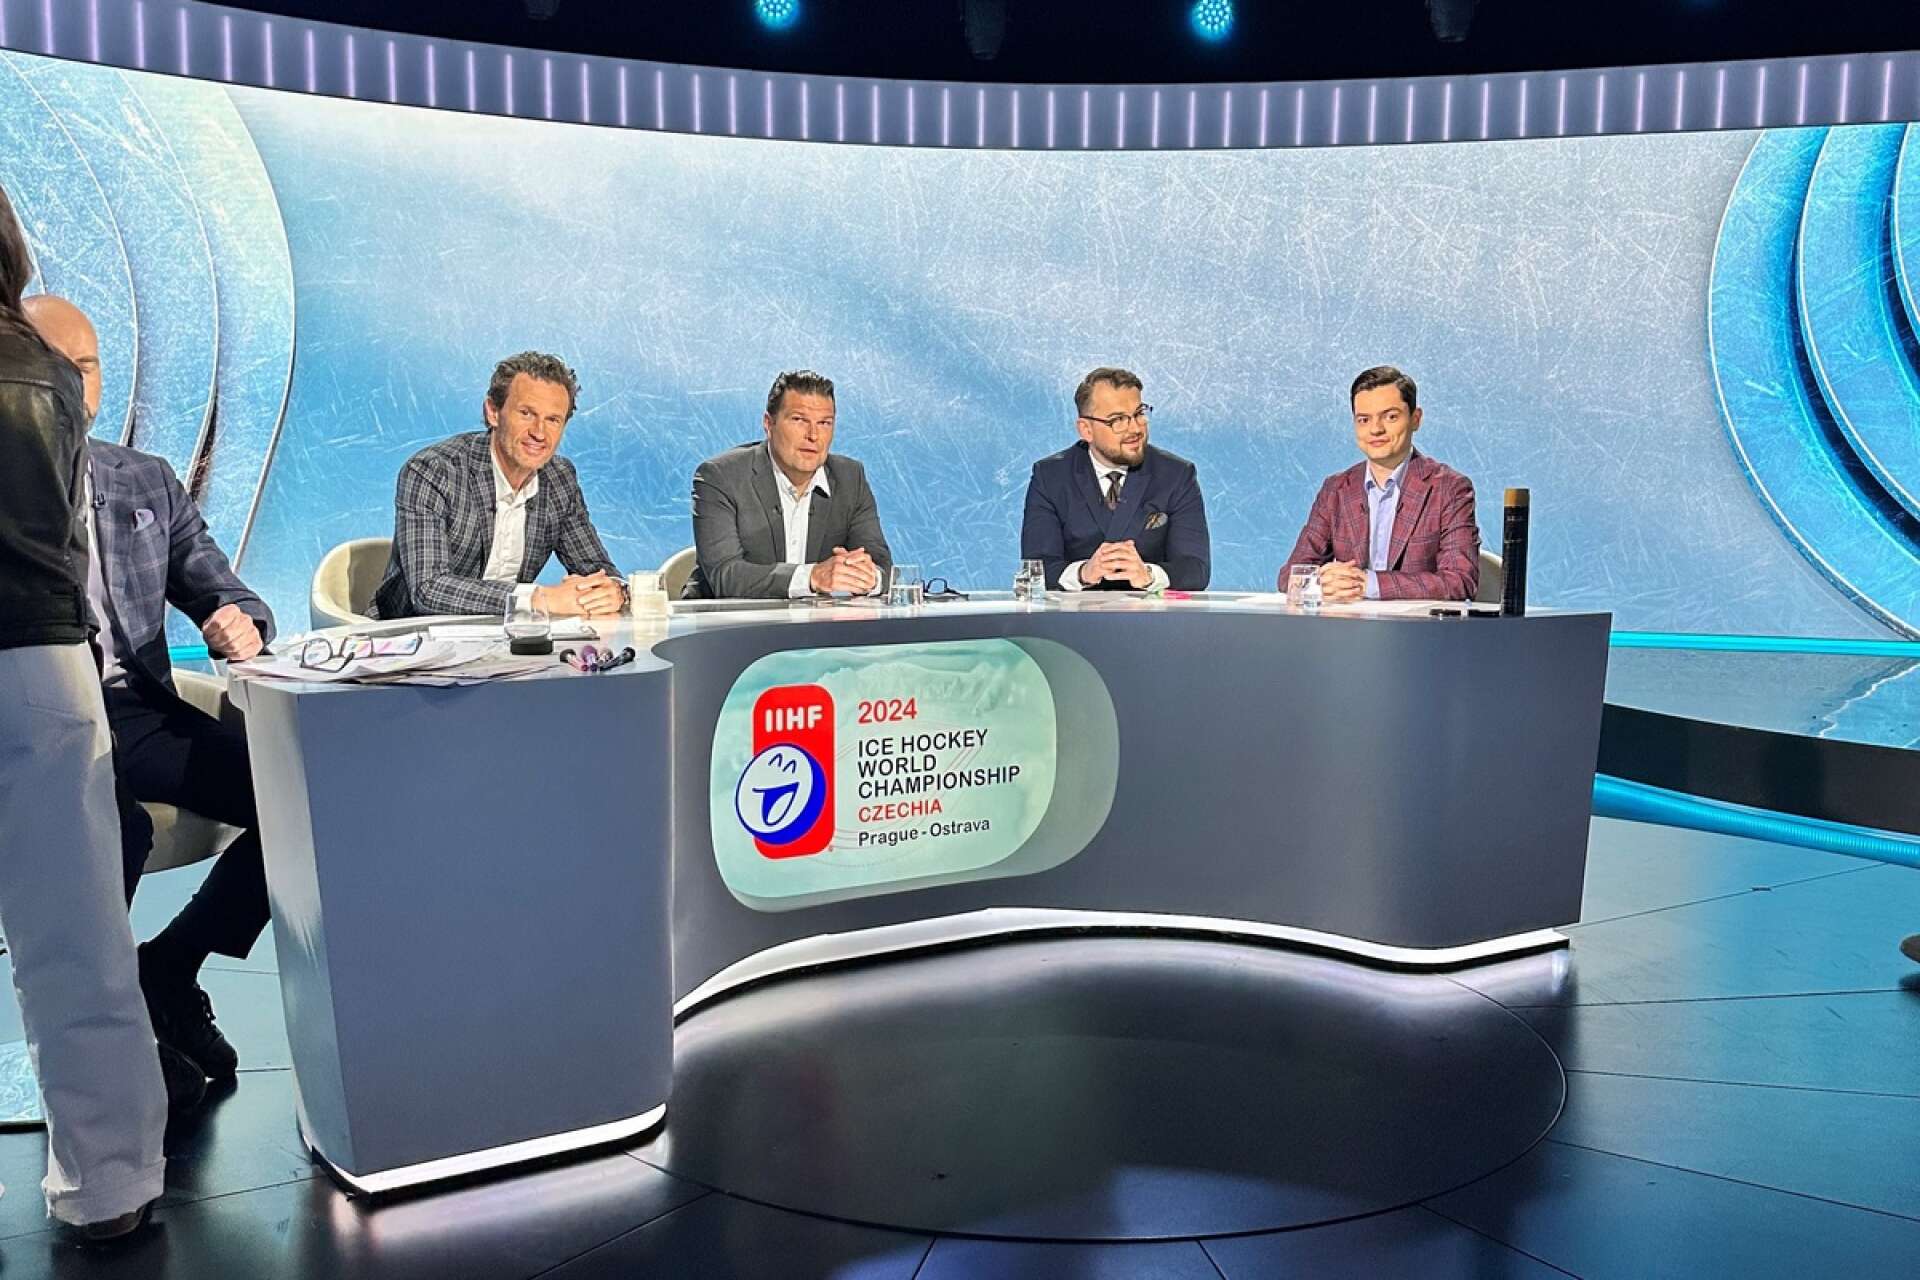 Maciej Szwoch i den polska tv-studion tillsammans med fyra män till med – får vi förmoda – svåruttalade namn.